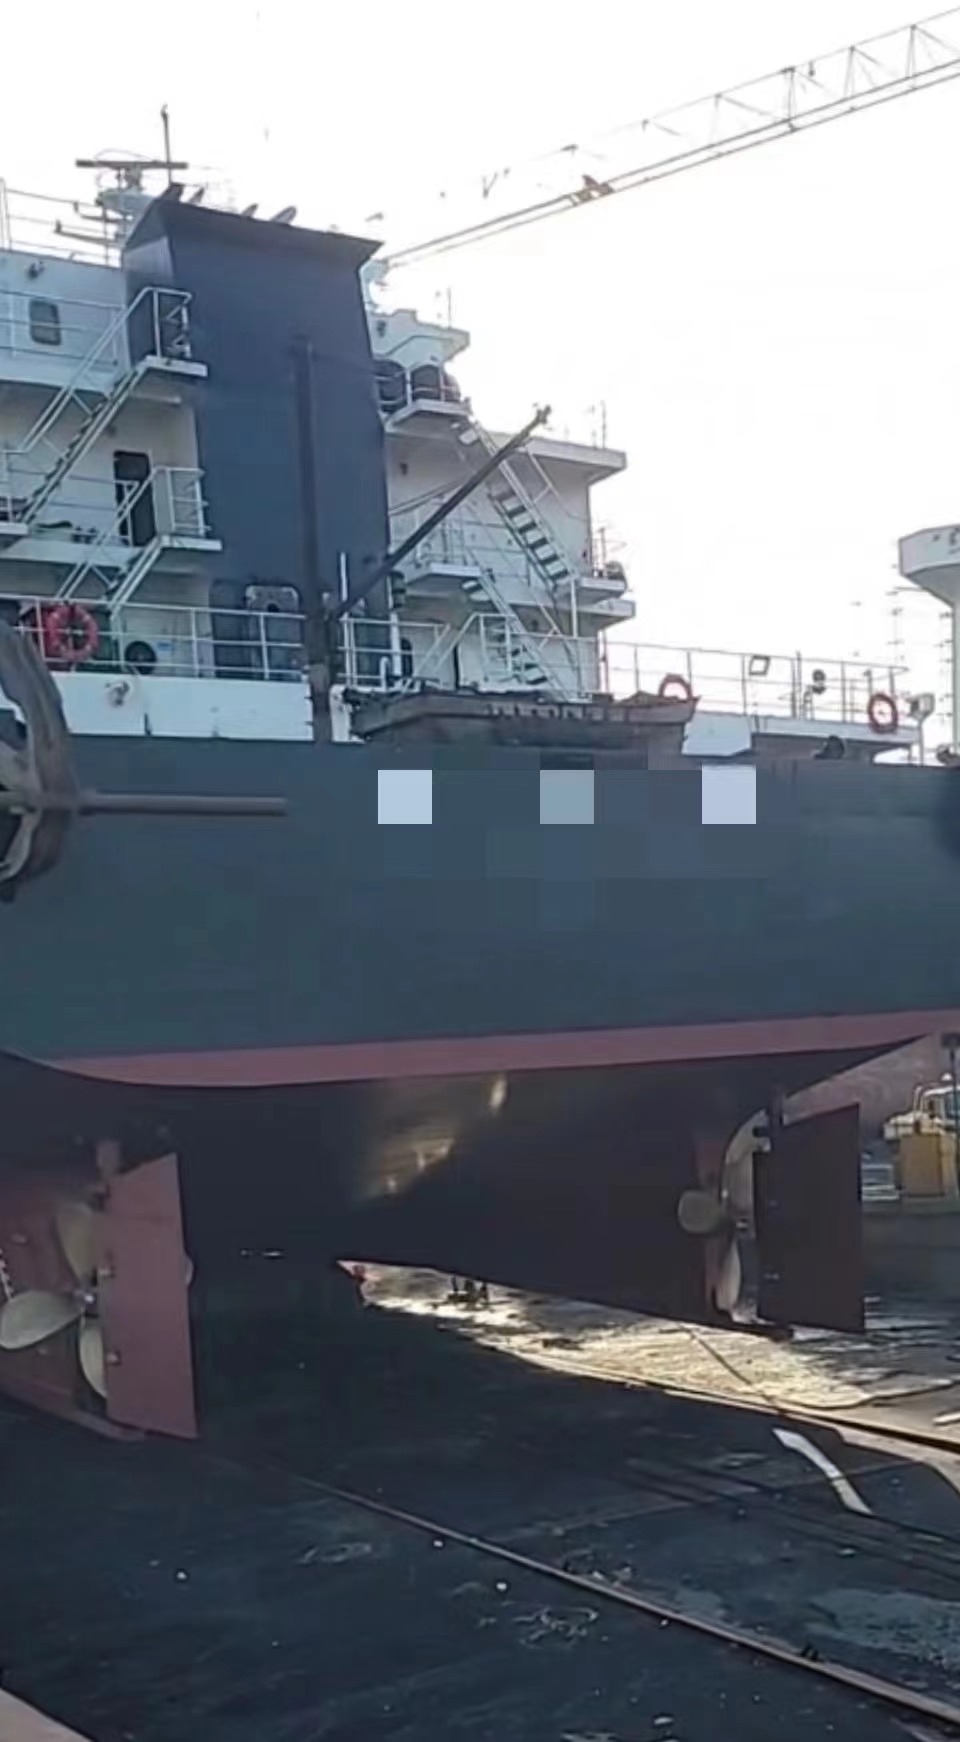 低价 低价出售5660吨甲板货船： 前跳板/后驾驶室 2018年1月江苏建造